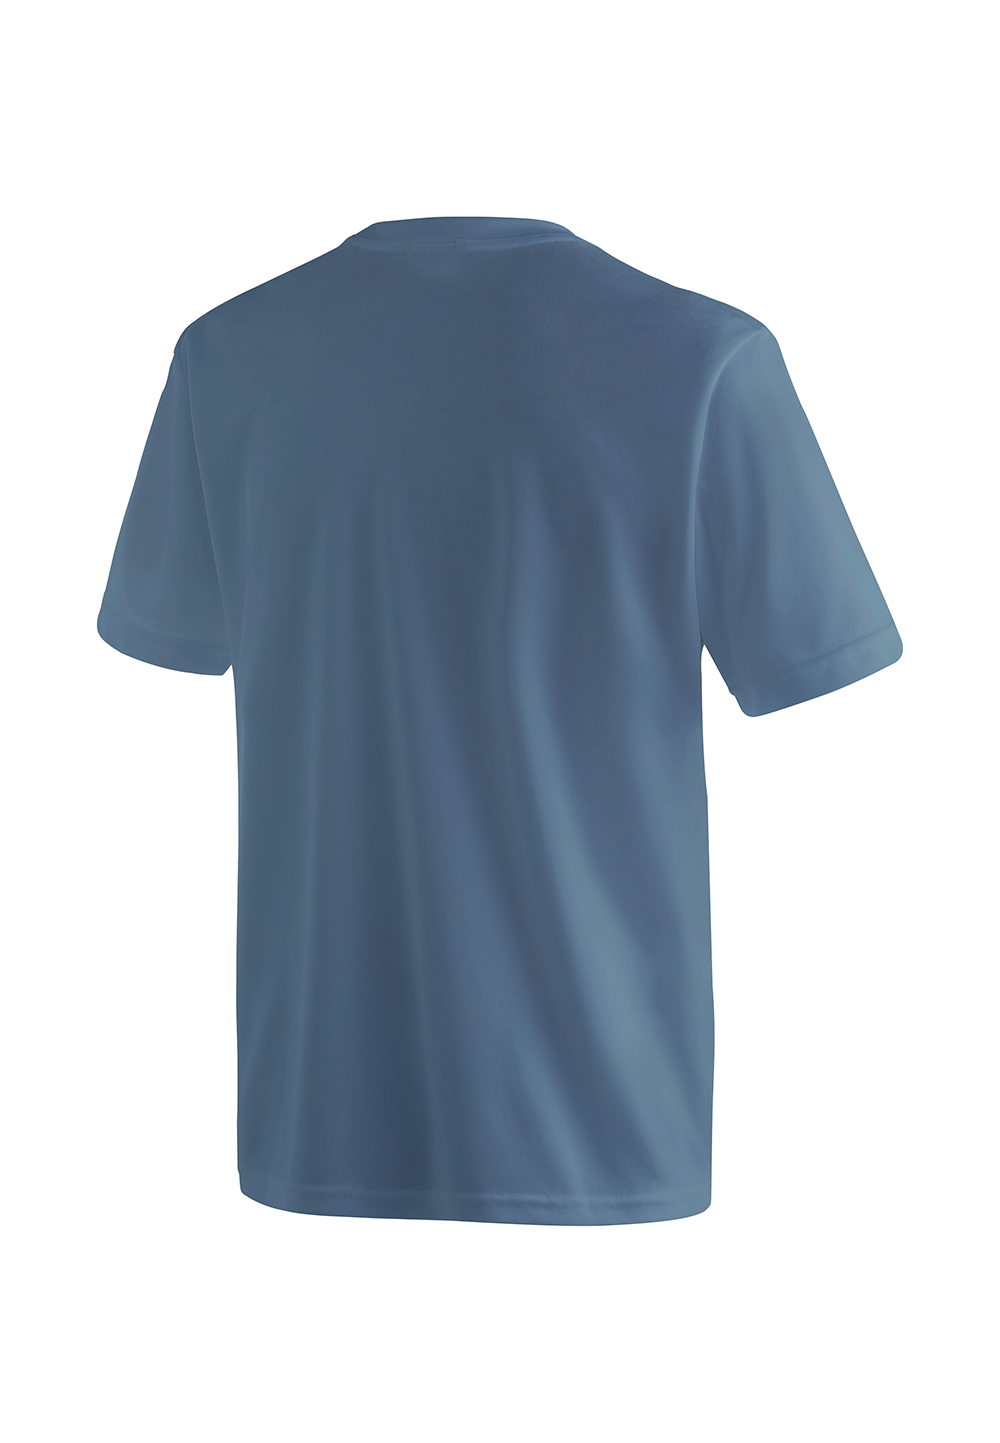 Maier Sports Herren T-Shirt Walter 3000008 ensign blue